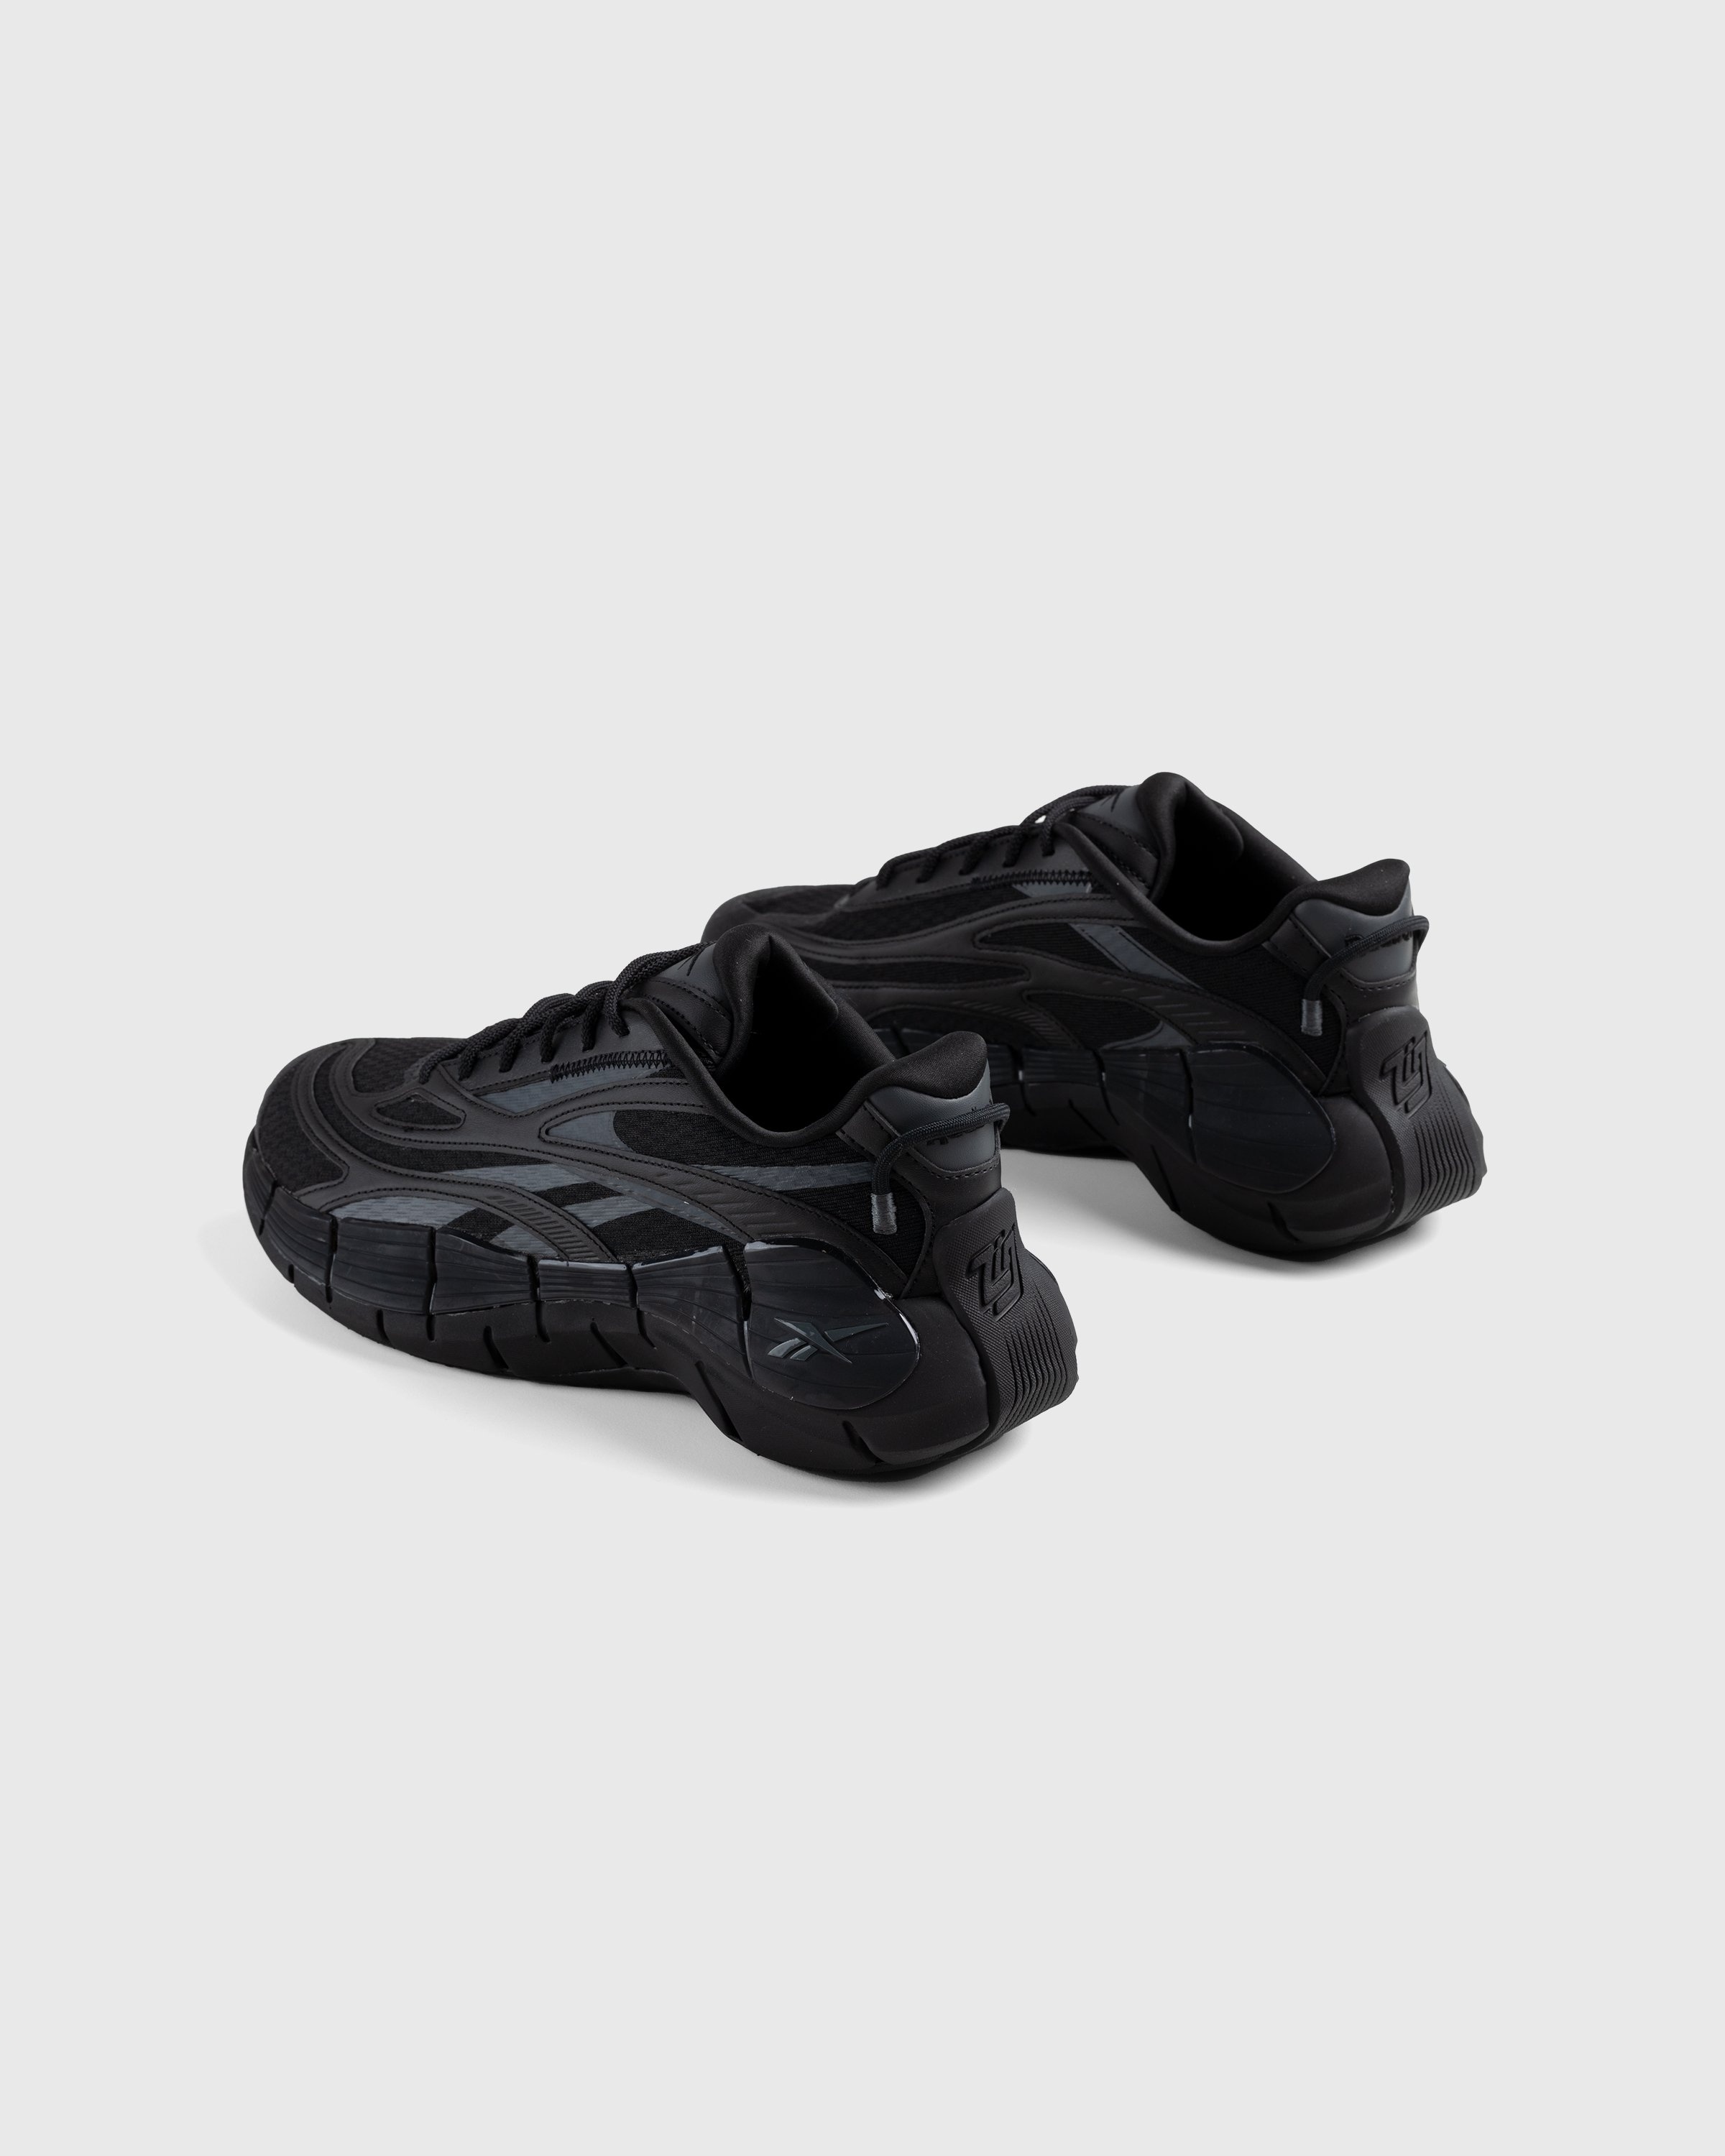 Reebok – Zig Kinetica 2.5 Black - Low Top Sneakers - Black - Image 2